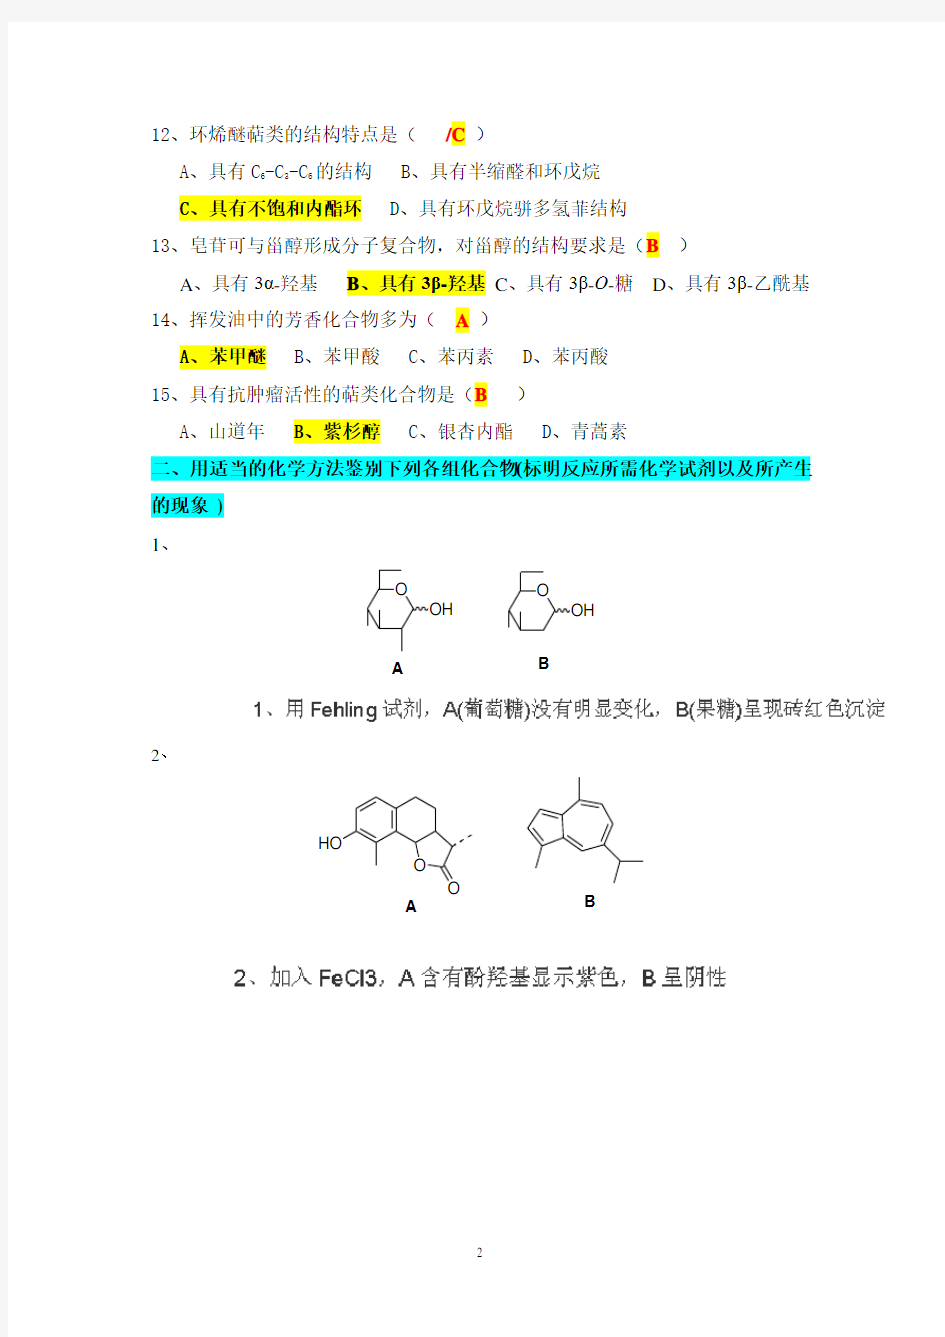 天然药物化学-3 (本科)答案-山东大学网络教育